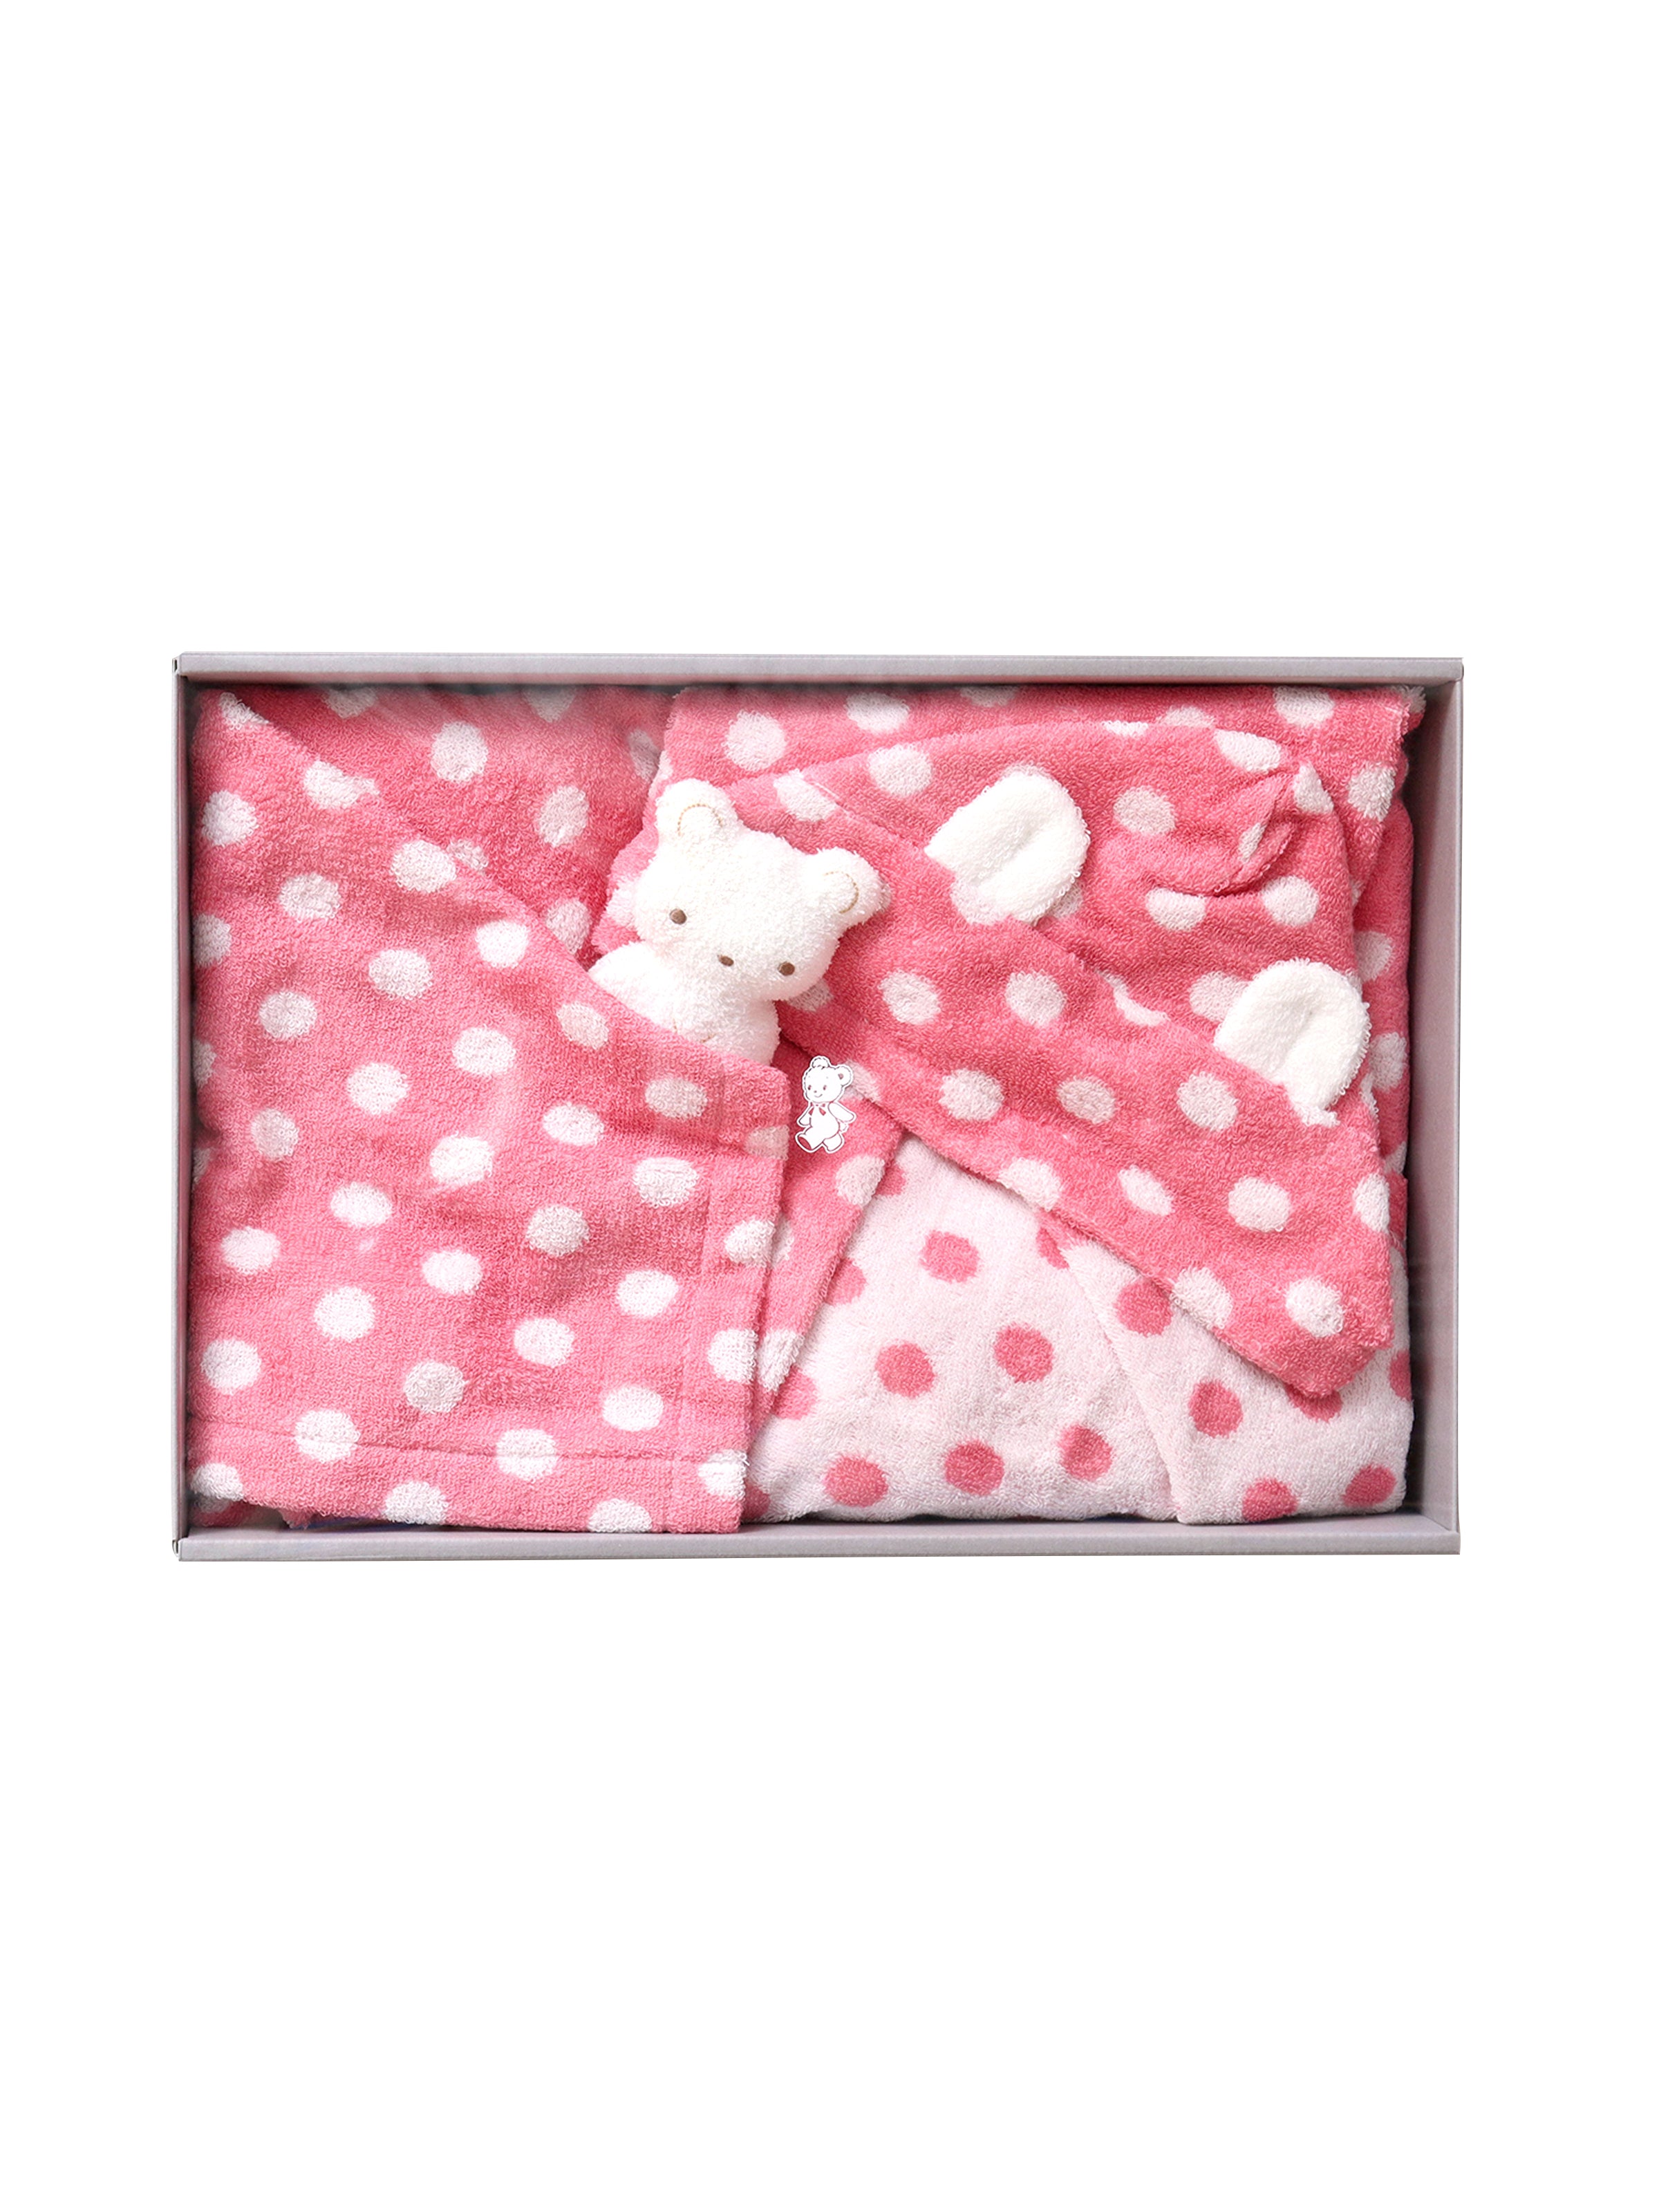 ファミリアポンチョ型バスタオル ピンク プレゼント包装あり - トイレ